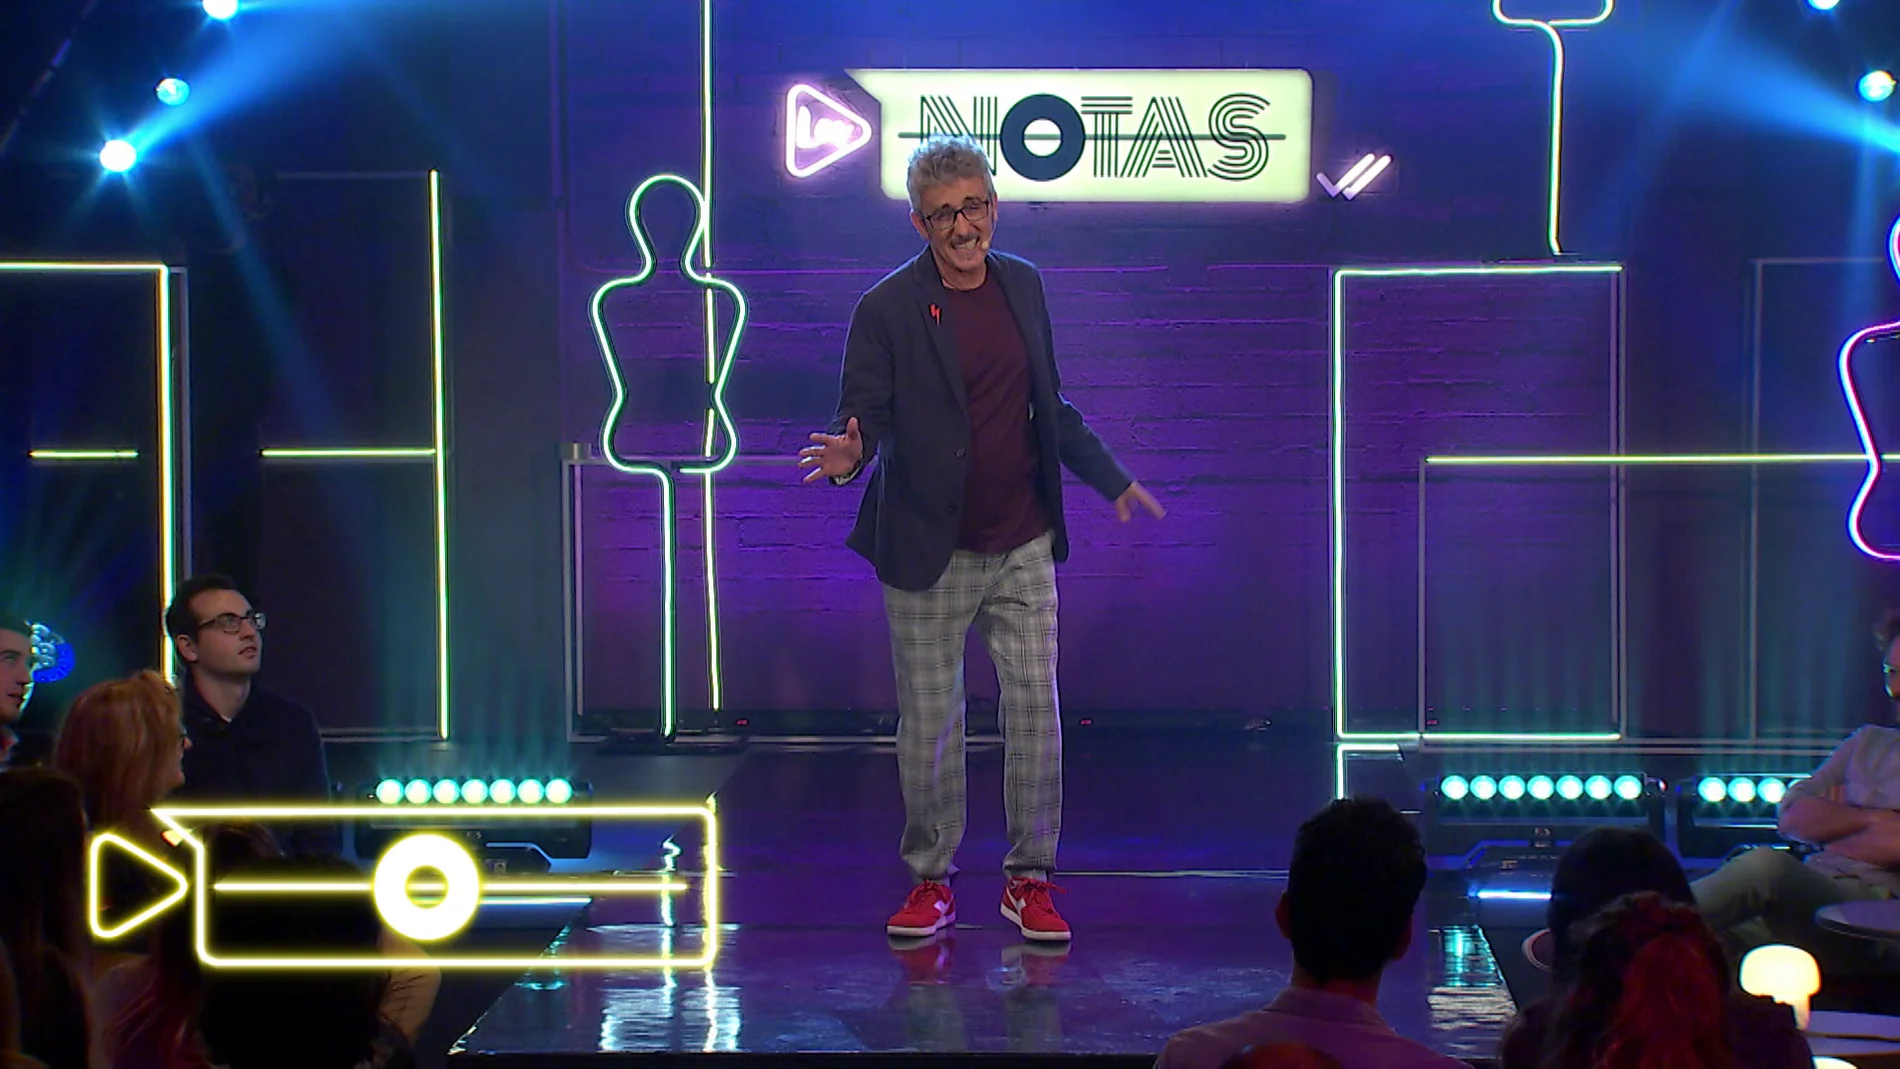 David Fernández se viene arriba en 'Los Notas' y canta una divertida canción